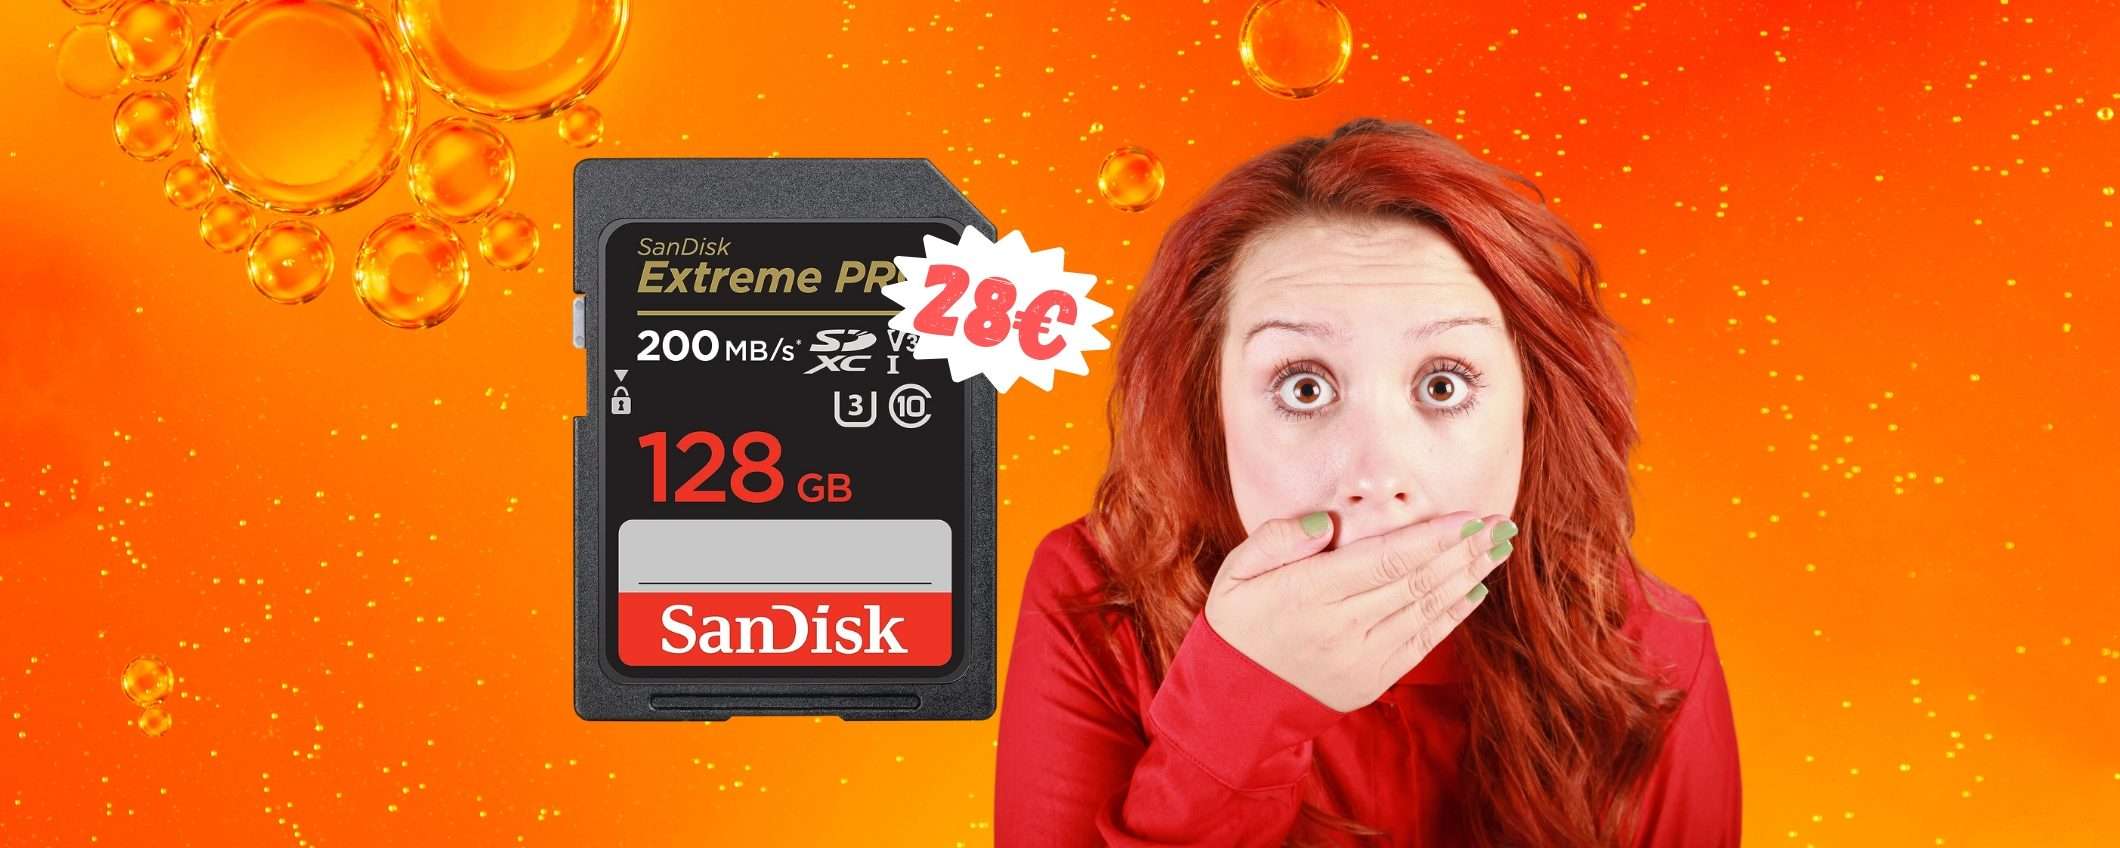 SanDisk Extreme PRO: scheda SD da 128GB fino a 200 MB/s a 28€